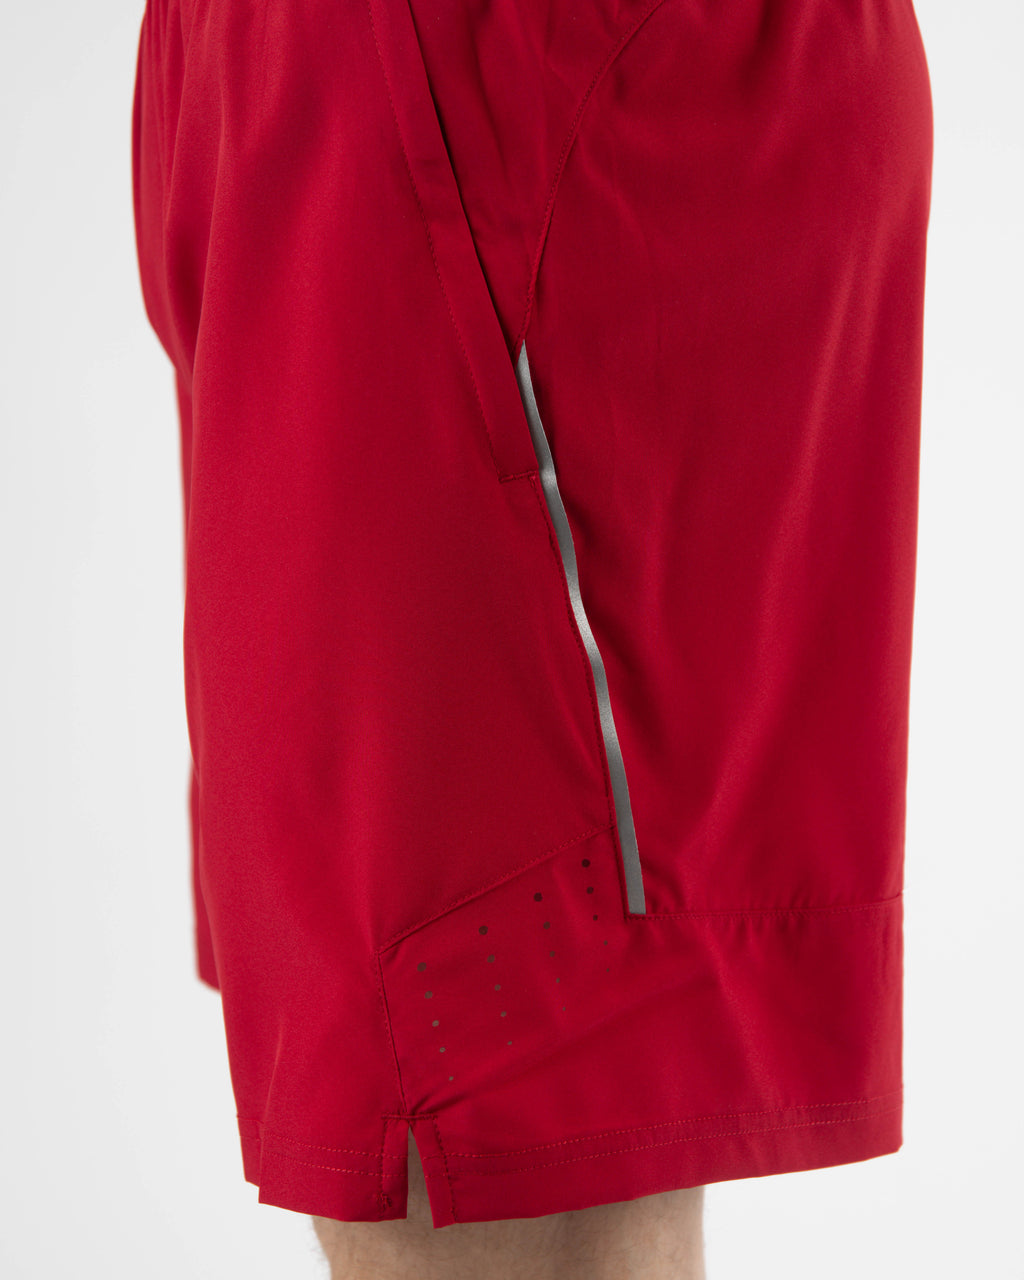 V2 6" Athletic Shorts ~ Red